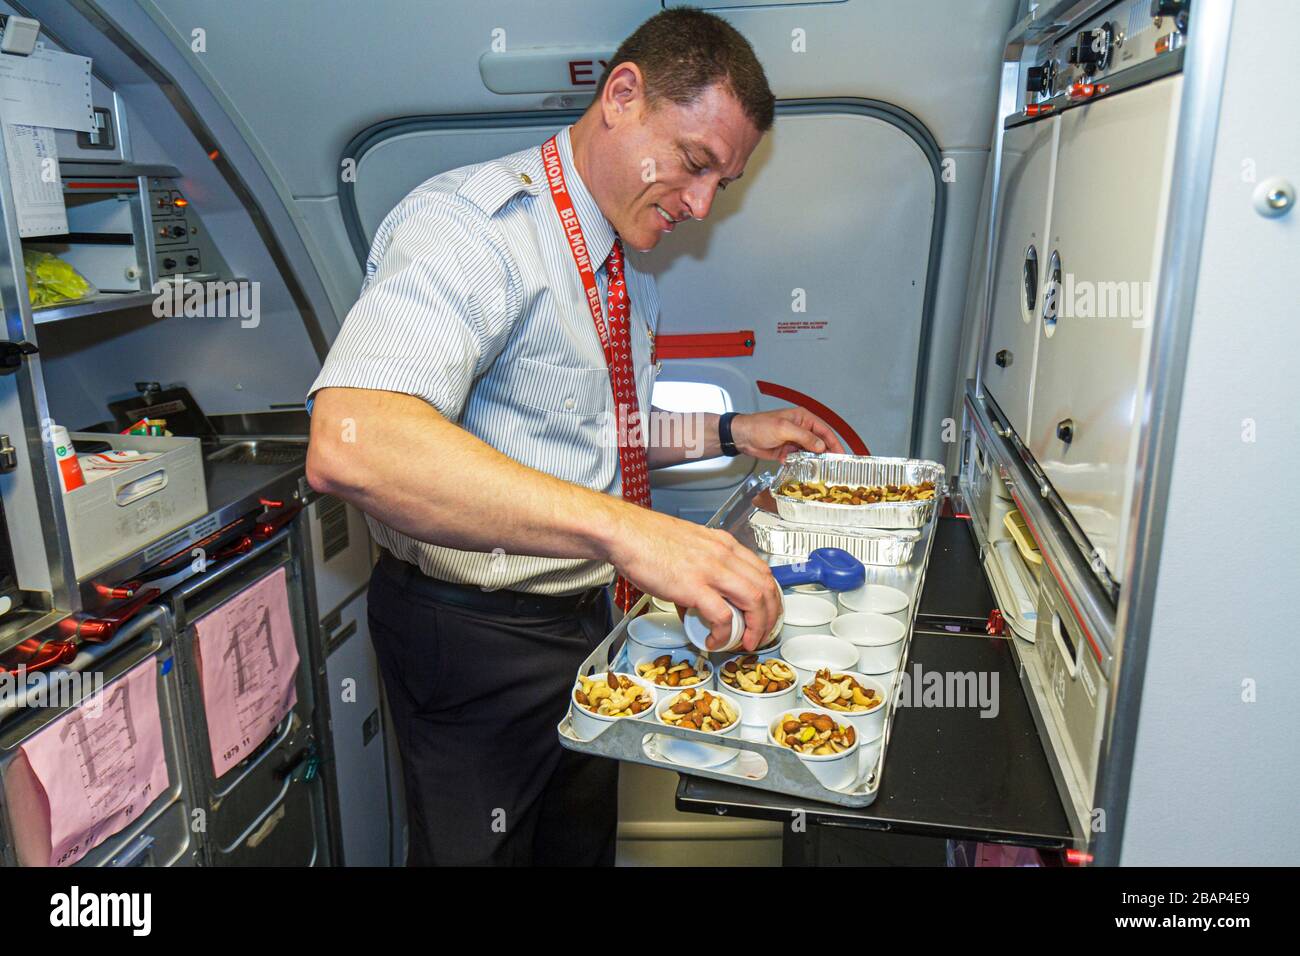 Miami Florida, Internationaler Flughafen, American Airlines, Flugbegleiter an Bord, der erstklassige Snacks zubereitete, männlicher Arbeiter Stockfoto